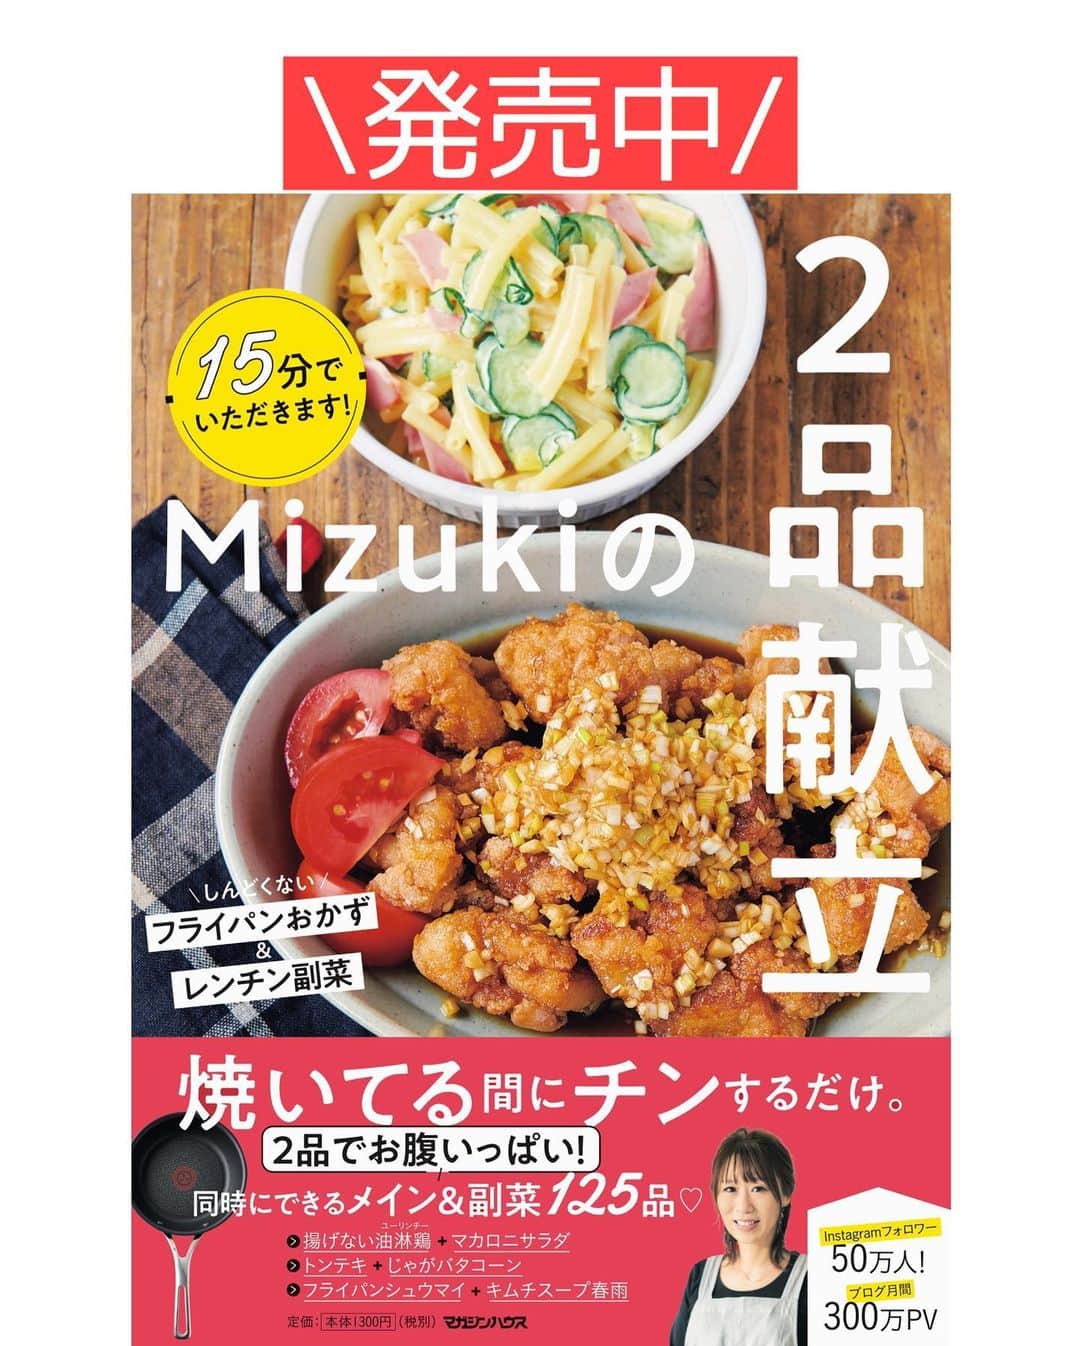 Mizuki【料理ブロガー・簡単レシピ】さんのインスタグラム写真 - (Mizuki【料理ブロガー・簡単レシピ】Instagram)「・﻿ 【#レシピ 】ーーーーーーー﻿ ホットケーキミックスで！﻿ バナナブラウニー﻿ ーーーーーーーーーーーーー﻿ ﻿ ﻿ ﻿ おはようございます(*^^*)﻿ ﻿ 今日もホケミスイーツ☆﻿ \バナナブラウニー/ のご紹介です♩﻿ ﻿ チョコとバナナをたっぷり加えた生地は﻿ バター少なめでもしっとりと仕上がり﻿ 濃厚な風味を楽しめますよ〜♡﻿ 今回はトッピングにもバナナを使用して﻿ 見た目もかわいく仕上げました(*´艸`)﻿ ﻿ 基本混ぜて焼くだけで﻿ とっても簡単に作れるので﻿ よかったらお試し下さいね(*^^*)﻿ ﻿ ﻿ ﻿ ＿＿＿＿＿＿＿＿＿＿＿＿＿＿＿＿＿＿＿＿﻿ 【15cm角型1台分】﻿ バナナ...2本﻿ 板チョコ...2枚(100g)﻿ バター(無塩・有塩どちらでも)...50g﻿ ●卵...2個﻿ ●砂糖・牛乳...各大1﻿ ☆ホットケーキミックス...50g﻿ ☆ココアパウダー...10g﻿ ﻿ (準備)型にシートを敷く。ココアはふるう。オーブンを170度に予熱する。﻿ 1.チョコとバターを細かく刻んで耐熱ボウルに入れ、600Wのレンジで1分加熱し、混ぜて溶かす。﻿ 2.別のボウルにバナナ1本を入れてフォークでつぶし、●を加えて泡立て器で混ぜ、1も加えて混ぜる。﻿ 3.最後に☆を加え、ゴムベラでさっくり混ぜて型に注ぐ。﻿ 4.残り1本のバナナを16等分の輪切りにして(＊あればレモン汁を振ると変色を防止できます)2にのせ、予熱したオーブンで25〜30分焼く。﻿ ￣￣￣￣￣￣￣￣￣￣￣￣￣￣￣￣￣￣￣￣﻿ ﻿ ﻿ ﻿ 《ポイント》﻿ ♦︎バナナは1本120gのものを使用しました♩﻿ ♦︎バターは無塩でも有塩でもOK！チョコの種類もお好みで！﻿ ♦︎工程1でチョコが溶け残る場合は追加加熱して下さい☆﻿ ♦︎中央が焼けにくいので竹串を刺して確認して下さい☆﻿ ♦︎トッピングのバナナはなくてもOK♩﻿ ﻿ ﻿ ﻿ ﻿ ﻿ ﻿ ﻿ ﻿ ⭐️発売中⭐️3刷重版が決まりました😭﻿ 本当にありがとうございます(涙)﻿ _____________________________________﻿ \15分でいただきます/﻿ 📕#Mizukiの2品献立 📕﻿ (9月24日発売・マガジンハウス)﻿ ￣￣￣￣￣￣￣￣￣￣￣￣￣￣￣￣￣﻿ ﻿ 忙しい私たちには﻿ 2品くらいがちょうどいい！﻿ 『しんどくない献立、考えました』﻿ ￣￣￣￣￣￣￣￣￣￣￣￣￣￣￣￣﻿ ﻿ ーーーーーPART.1 ーーーーー﻿ 【Mizukiのお墨つき！２品献立ベスト10】﻿ 約15分でできる10献立をご紹介！﻿ メインは全部フライパン、副菜はレンチンor混ぜるだけ♡﻿ ﻿ ーーーーーPART.2 ーーーーー﻿ 【フライパンひとつ！今夜のメインおかず】﻿ 献立の主役になる肉や魚のおかず50品！﻿ Part3の副菜と組み合わせれば﻿ 献立のバリエーションが広がりますよ♩﻿ ﻿ ーーーーー PART.3 ーーーーー﻿ 【合間に作れる！ 野菜別かんたん副菜】﻿ レンチンor和えるだけの副菜レシピを﻿ 素材別にたっぷり収録♩﻿ ﻿ ーーーーー番外編ーーーーー﻿ 【ひとつで満足！ご飯＆麺】﻿ 【具だくさん！おかずスープ】﻿ 【オーブンいらずのおやつレシピ】﻿ ￣￣￣￣￣￣￣￣￣￣￣￣￣￣￣￣￣￣﻿ (ハイライトにリンク🔗あります💗)﻿ ﻿ ﻿ ﻿ ﻿ ＿＿＿＿＿＿＿＿＿＿＿＿＿＿＿＿＿＿﻿ レシピを作って下さった際や﻿ レシピ本についてのご投稿には﻿ タグ付け( @mizuki_31cafe )して﻿ お知らせいただけると嬉しいです😊💕﻿ ￣￣￣￣￣￣￣￣￣￣￣￣￣￣￣￣￣￣﻿ ﻿ ﻿ ﻿ ﻿ #ホットケーキミックス#ホケミ#ブラウニー#バナナ#お菓子#Mizuki#簡単レシピ#時短レシピ#節約レシピ#料理#フーディーテーブル#マカロニメイト#おうちごはん#デリスタグラマー#料理好きな人と繋がりたい#食べ物#料理記録#おうちごはんlover#写真好きな人と繋がりたい#foodpic#cooking#recipe#lin_stagrammer#foodporn#yummy#f52grams#バナナブラウニーm」11月23日 8時42分 - mizuki_31cafe